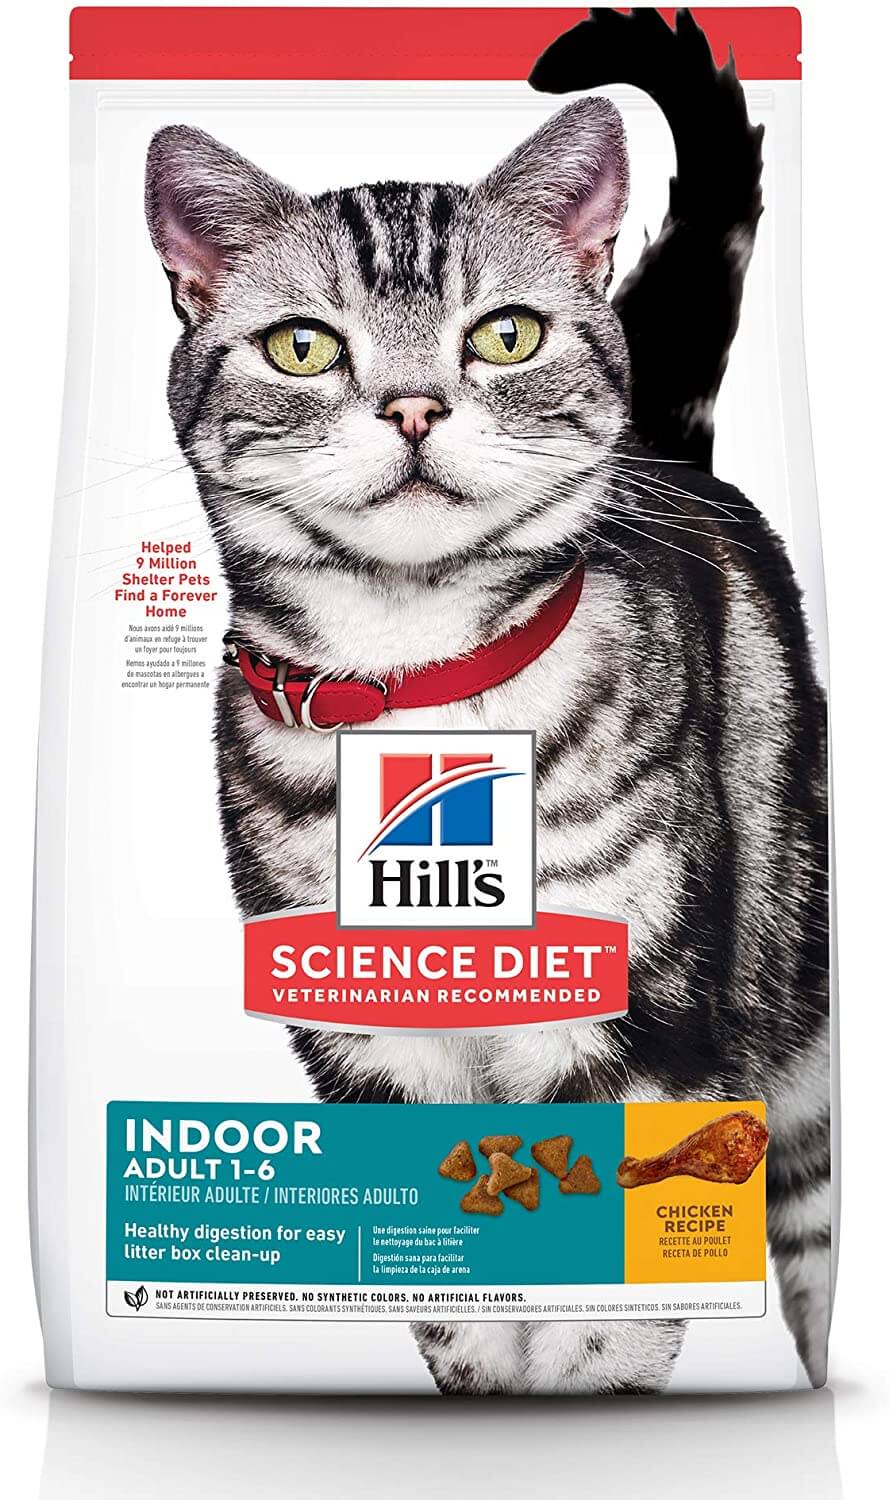 Hills Science Diet Indoor cat food